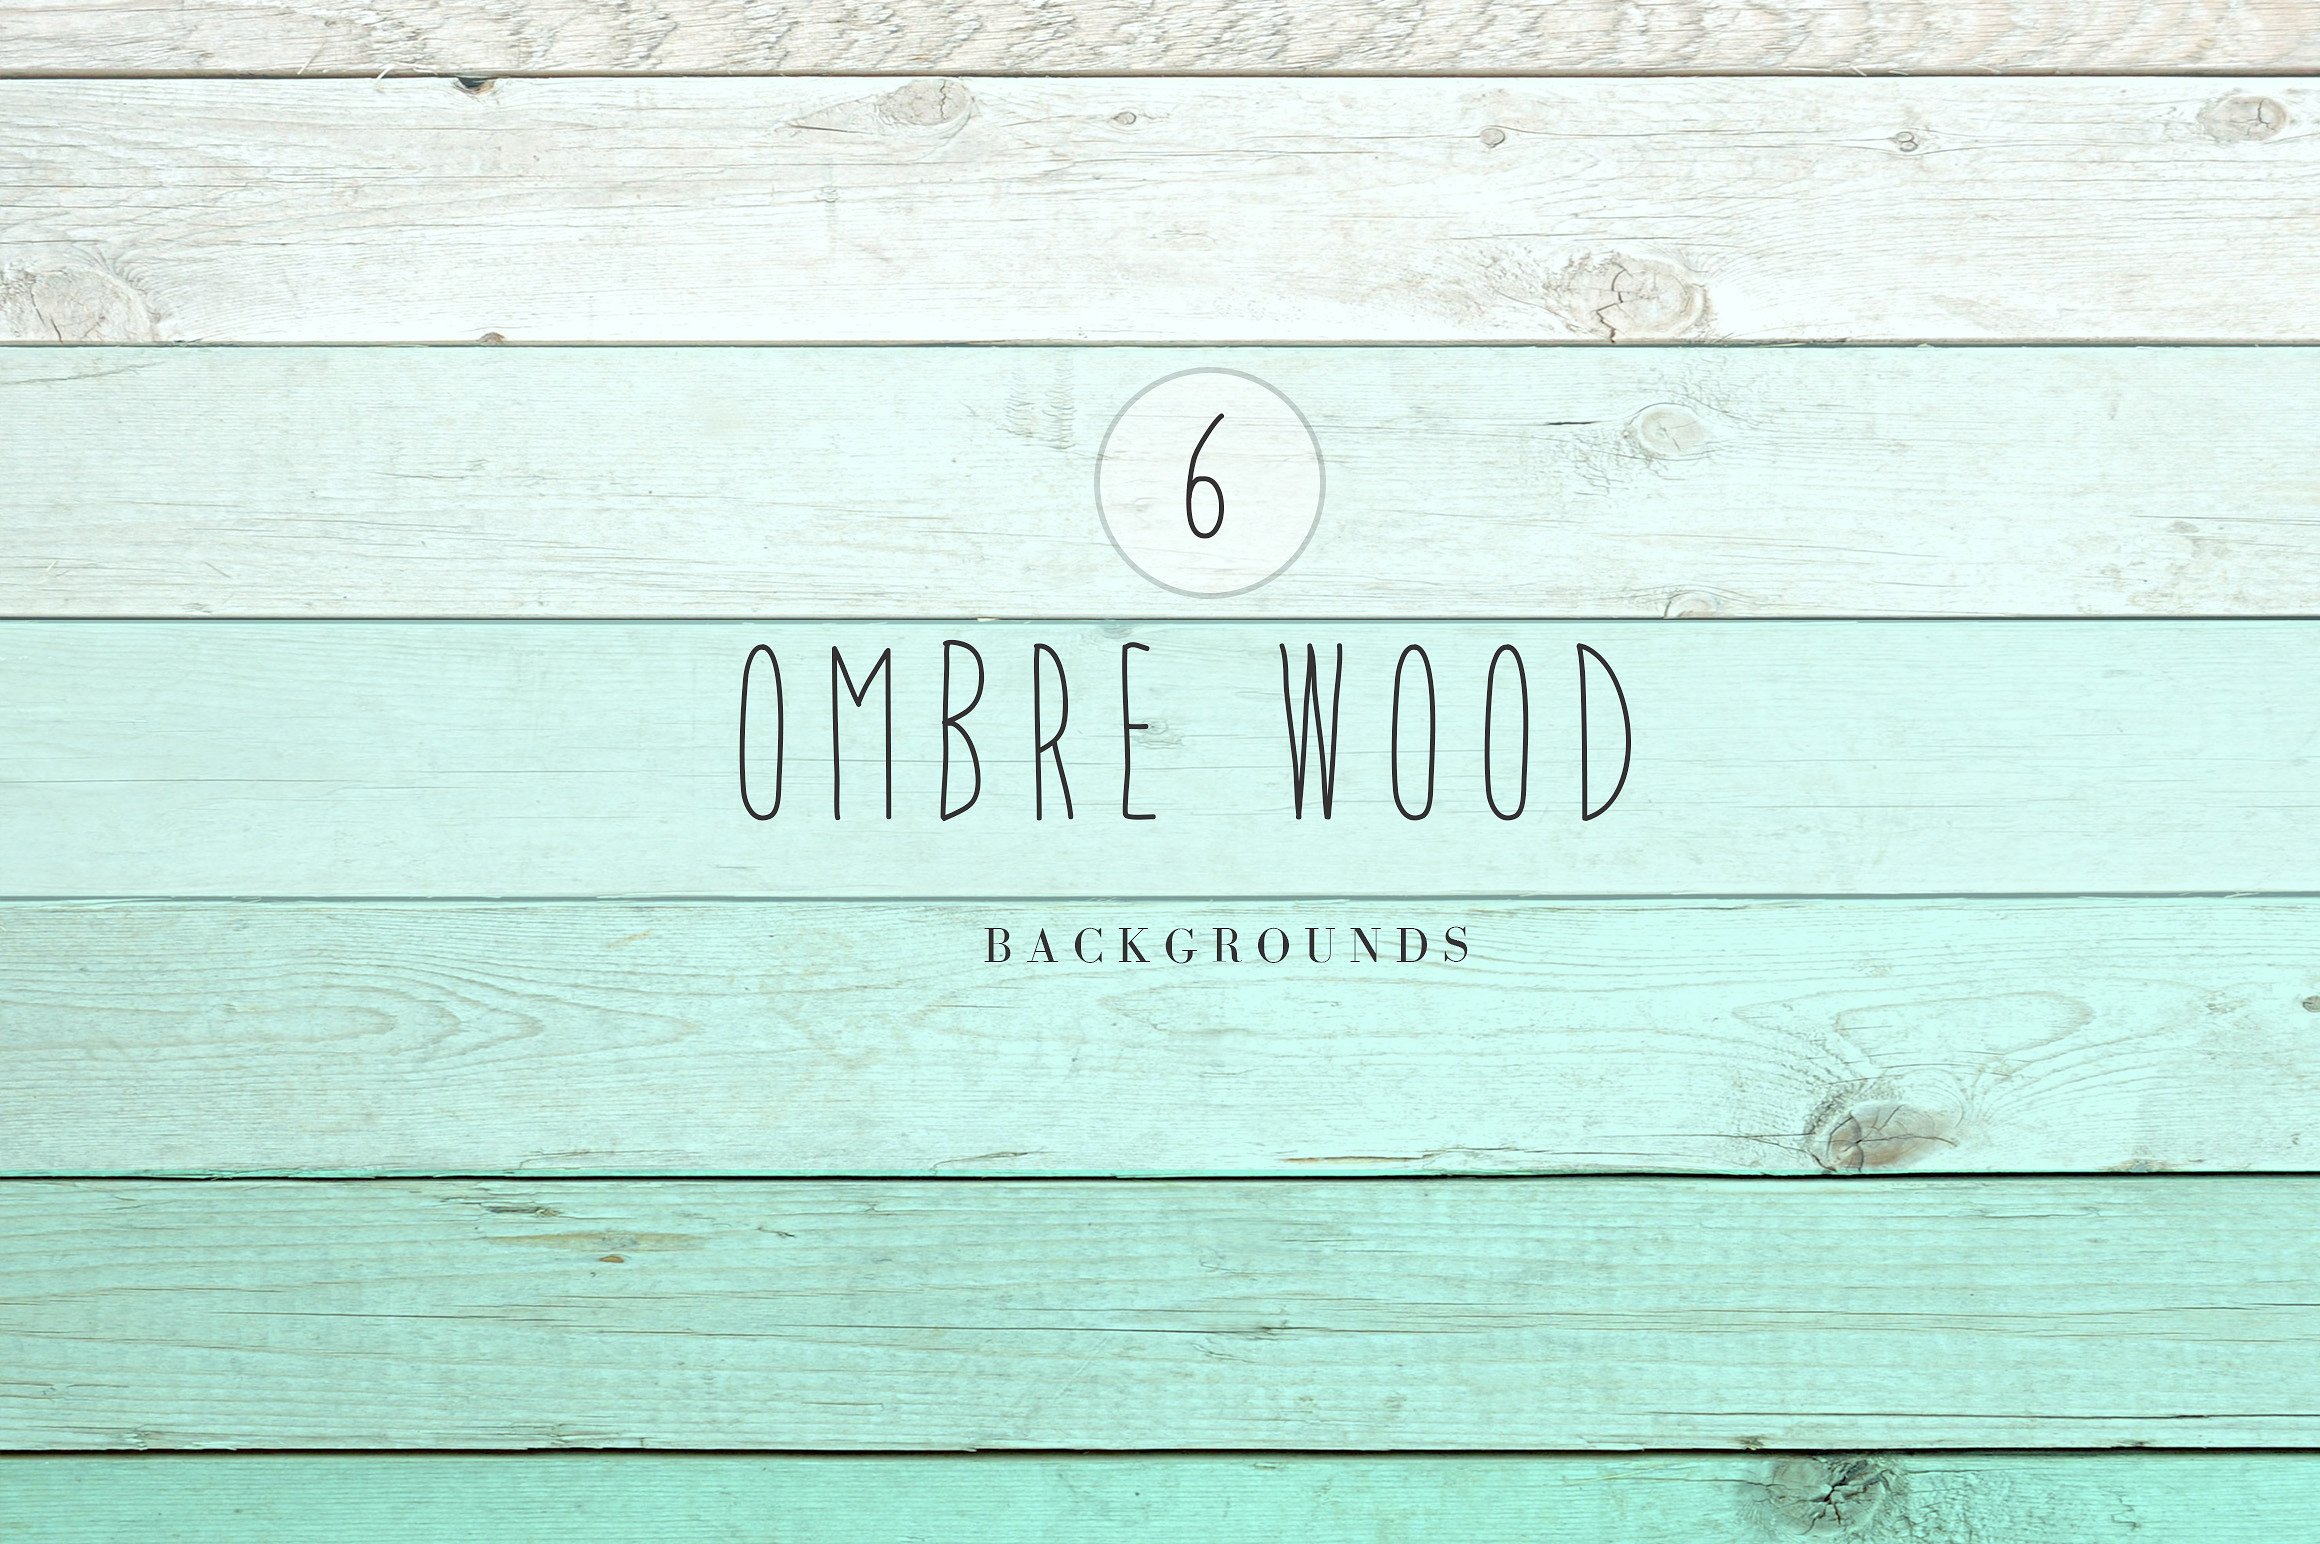 木板图案设计素材Ombre wood backgrounds